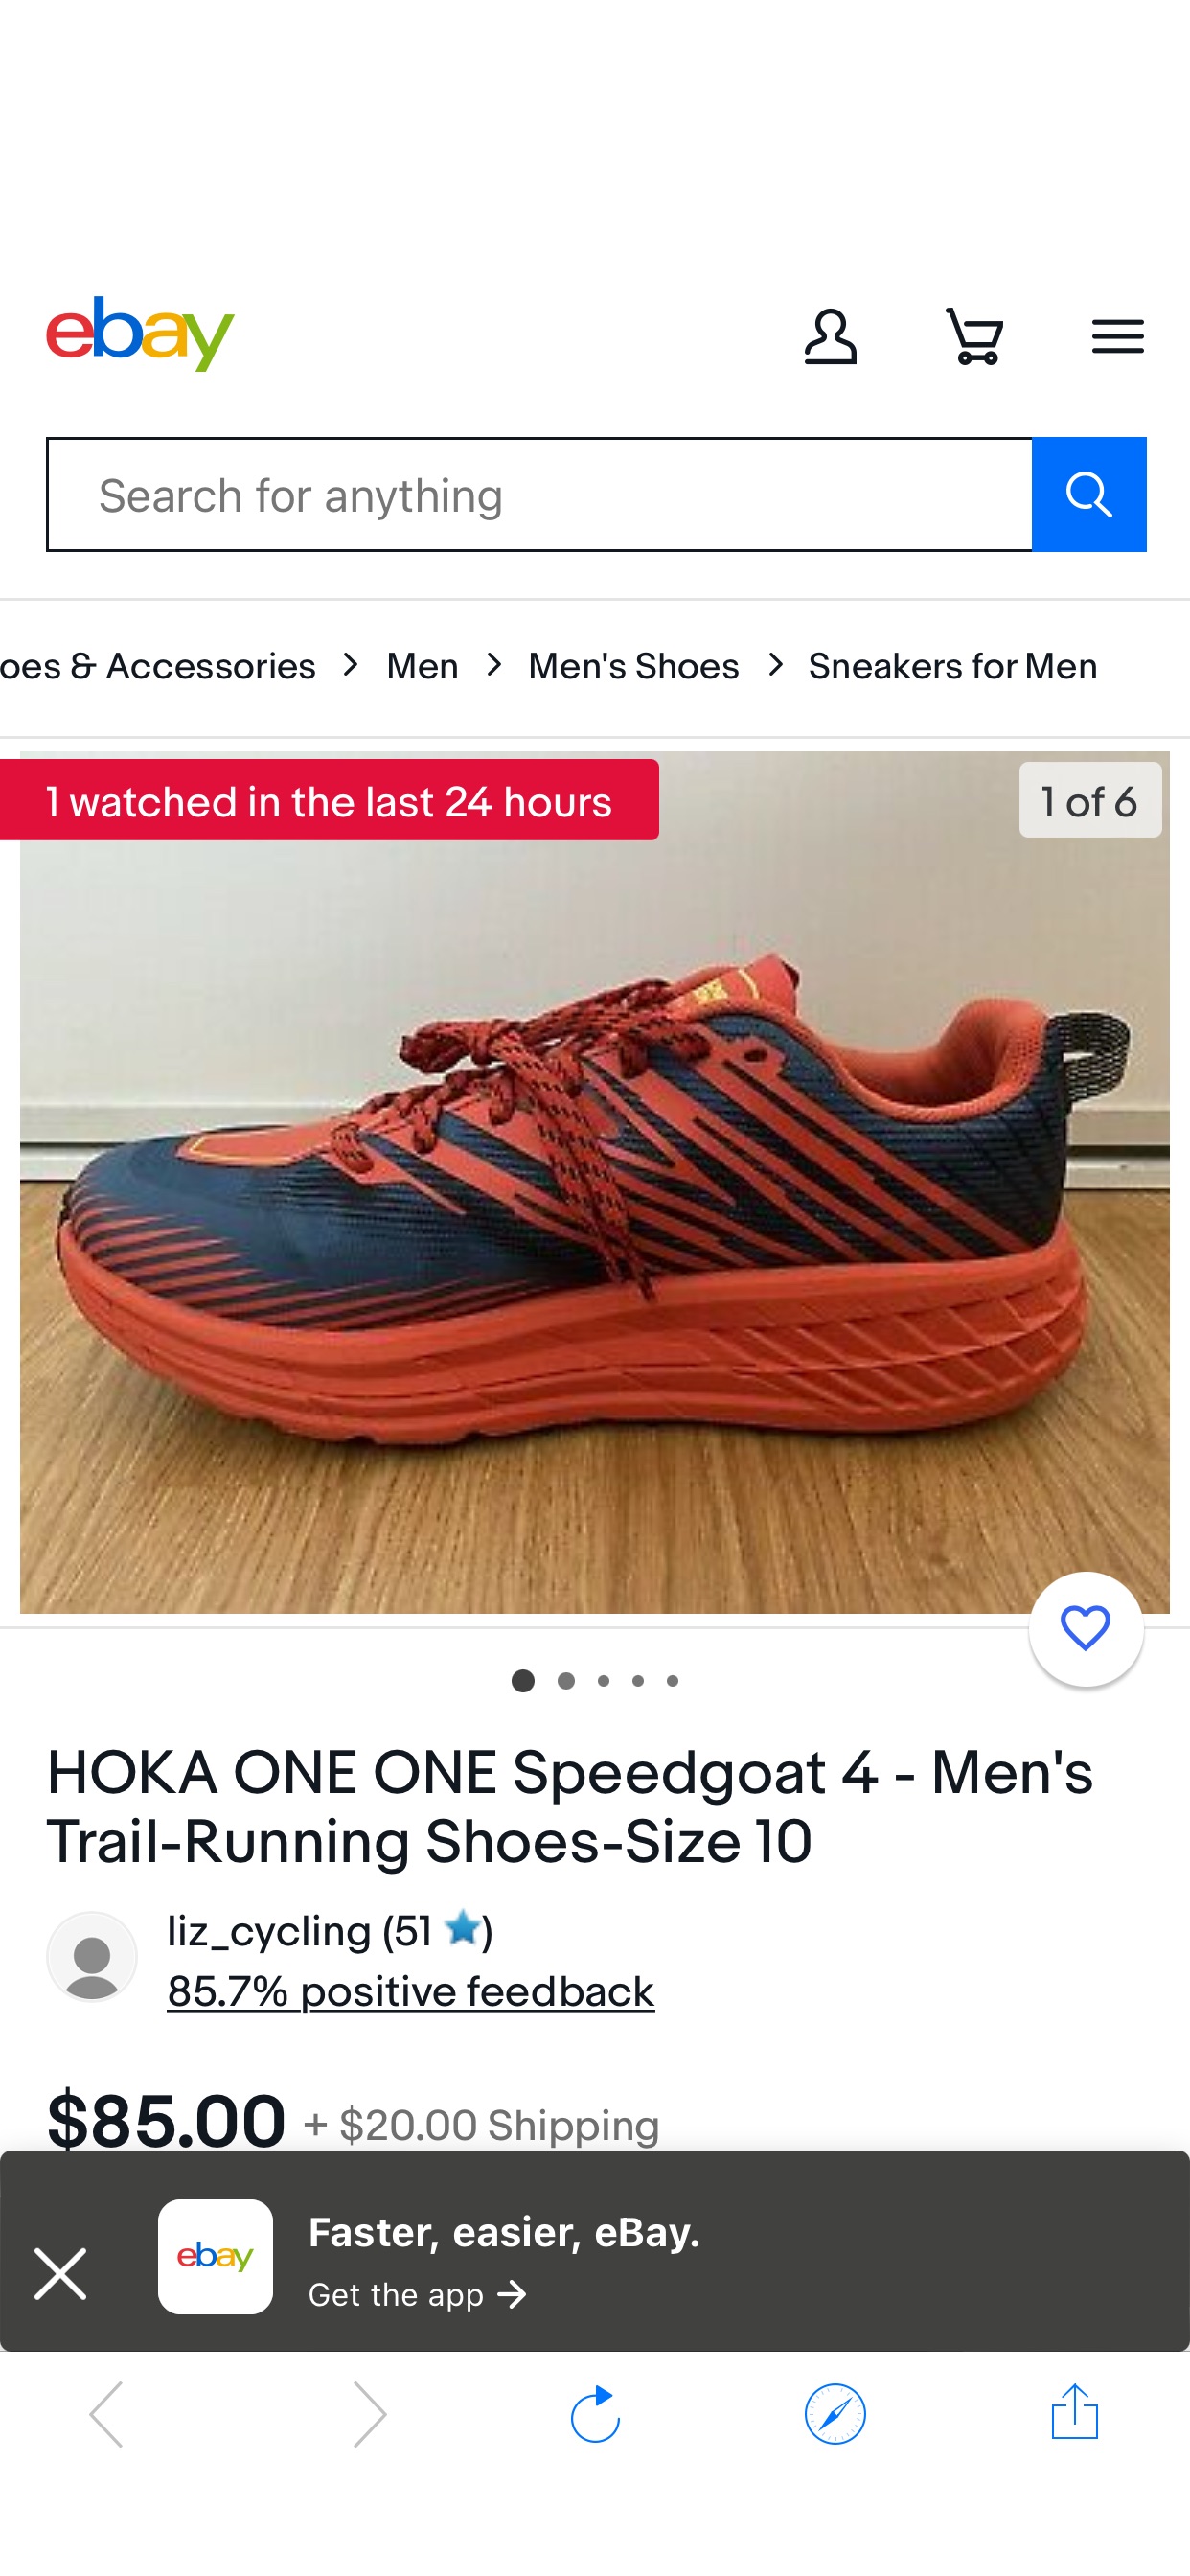 HOKA ONE ONE Speedgoat 4 - Men's Trail-Running Shoes-Size 10 | eBay HOKA 徒步经典款